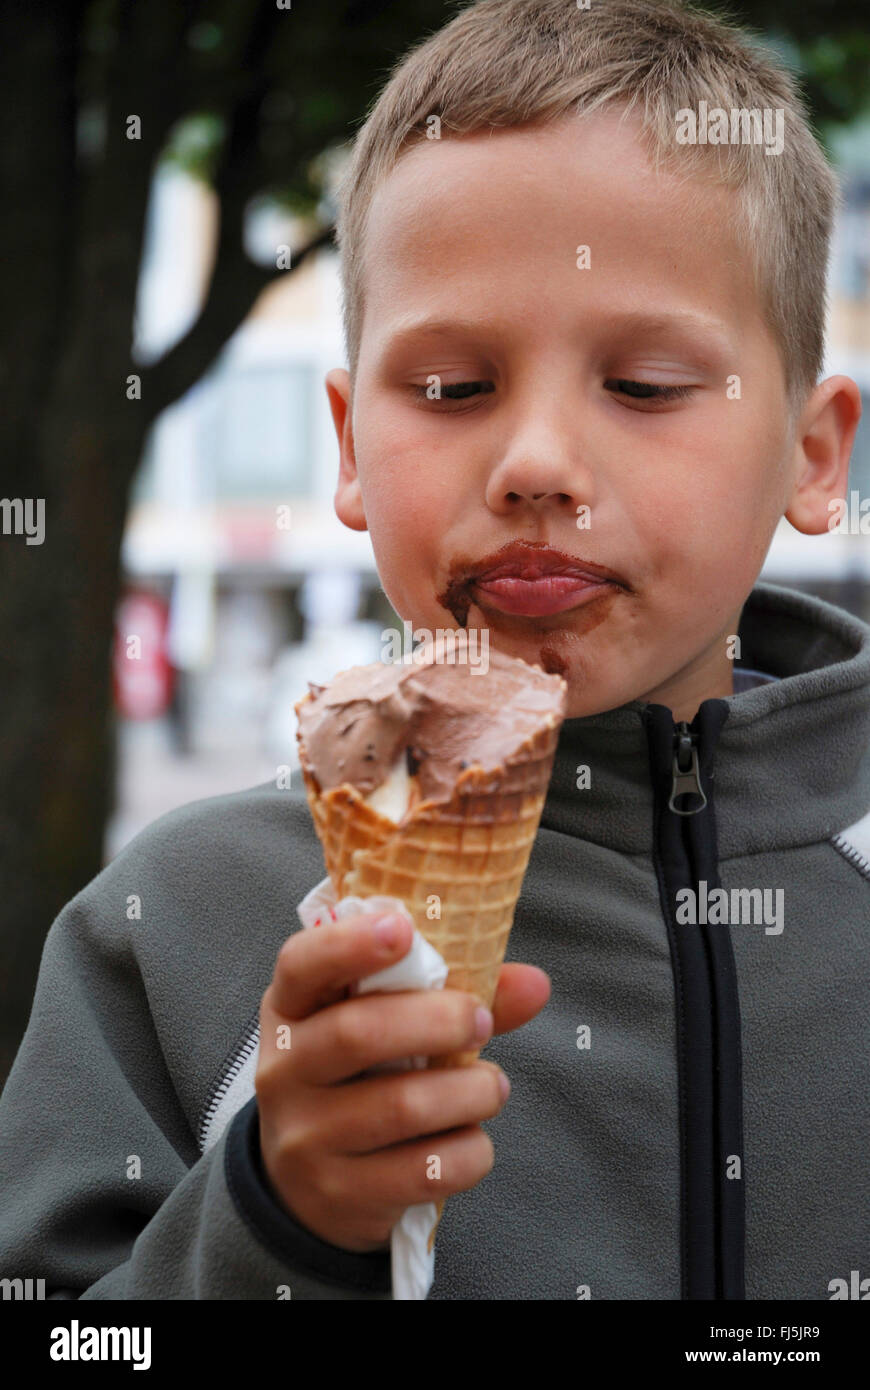 Petit garçon avec des traînées de manger avec plaisir un visage crème glacée au chocolat, portrait d'un enfant, Allemagne Banque D'Images